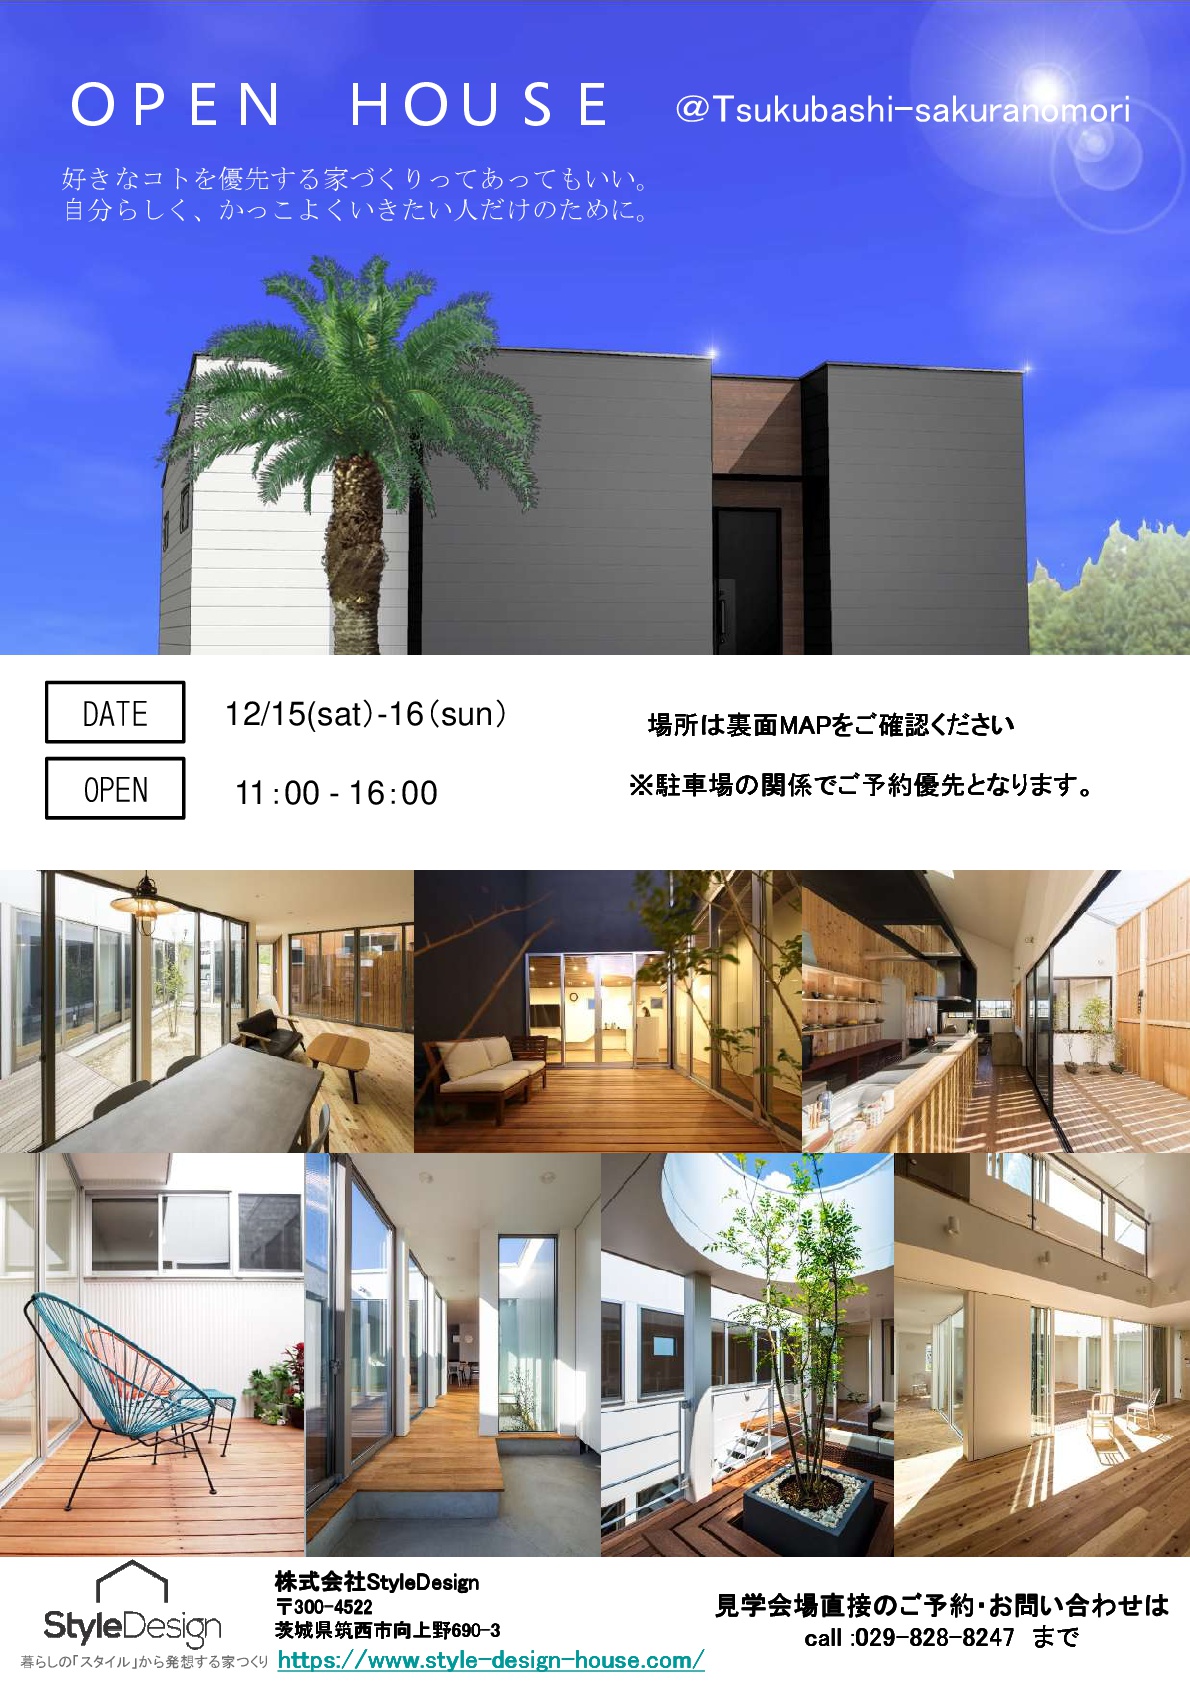 OPEN HOUSE「自分らしく。かっこよく。」in 茨城県つくば市さくらの森